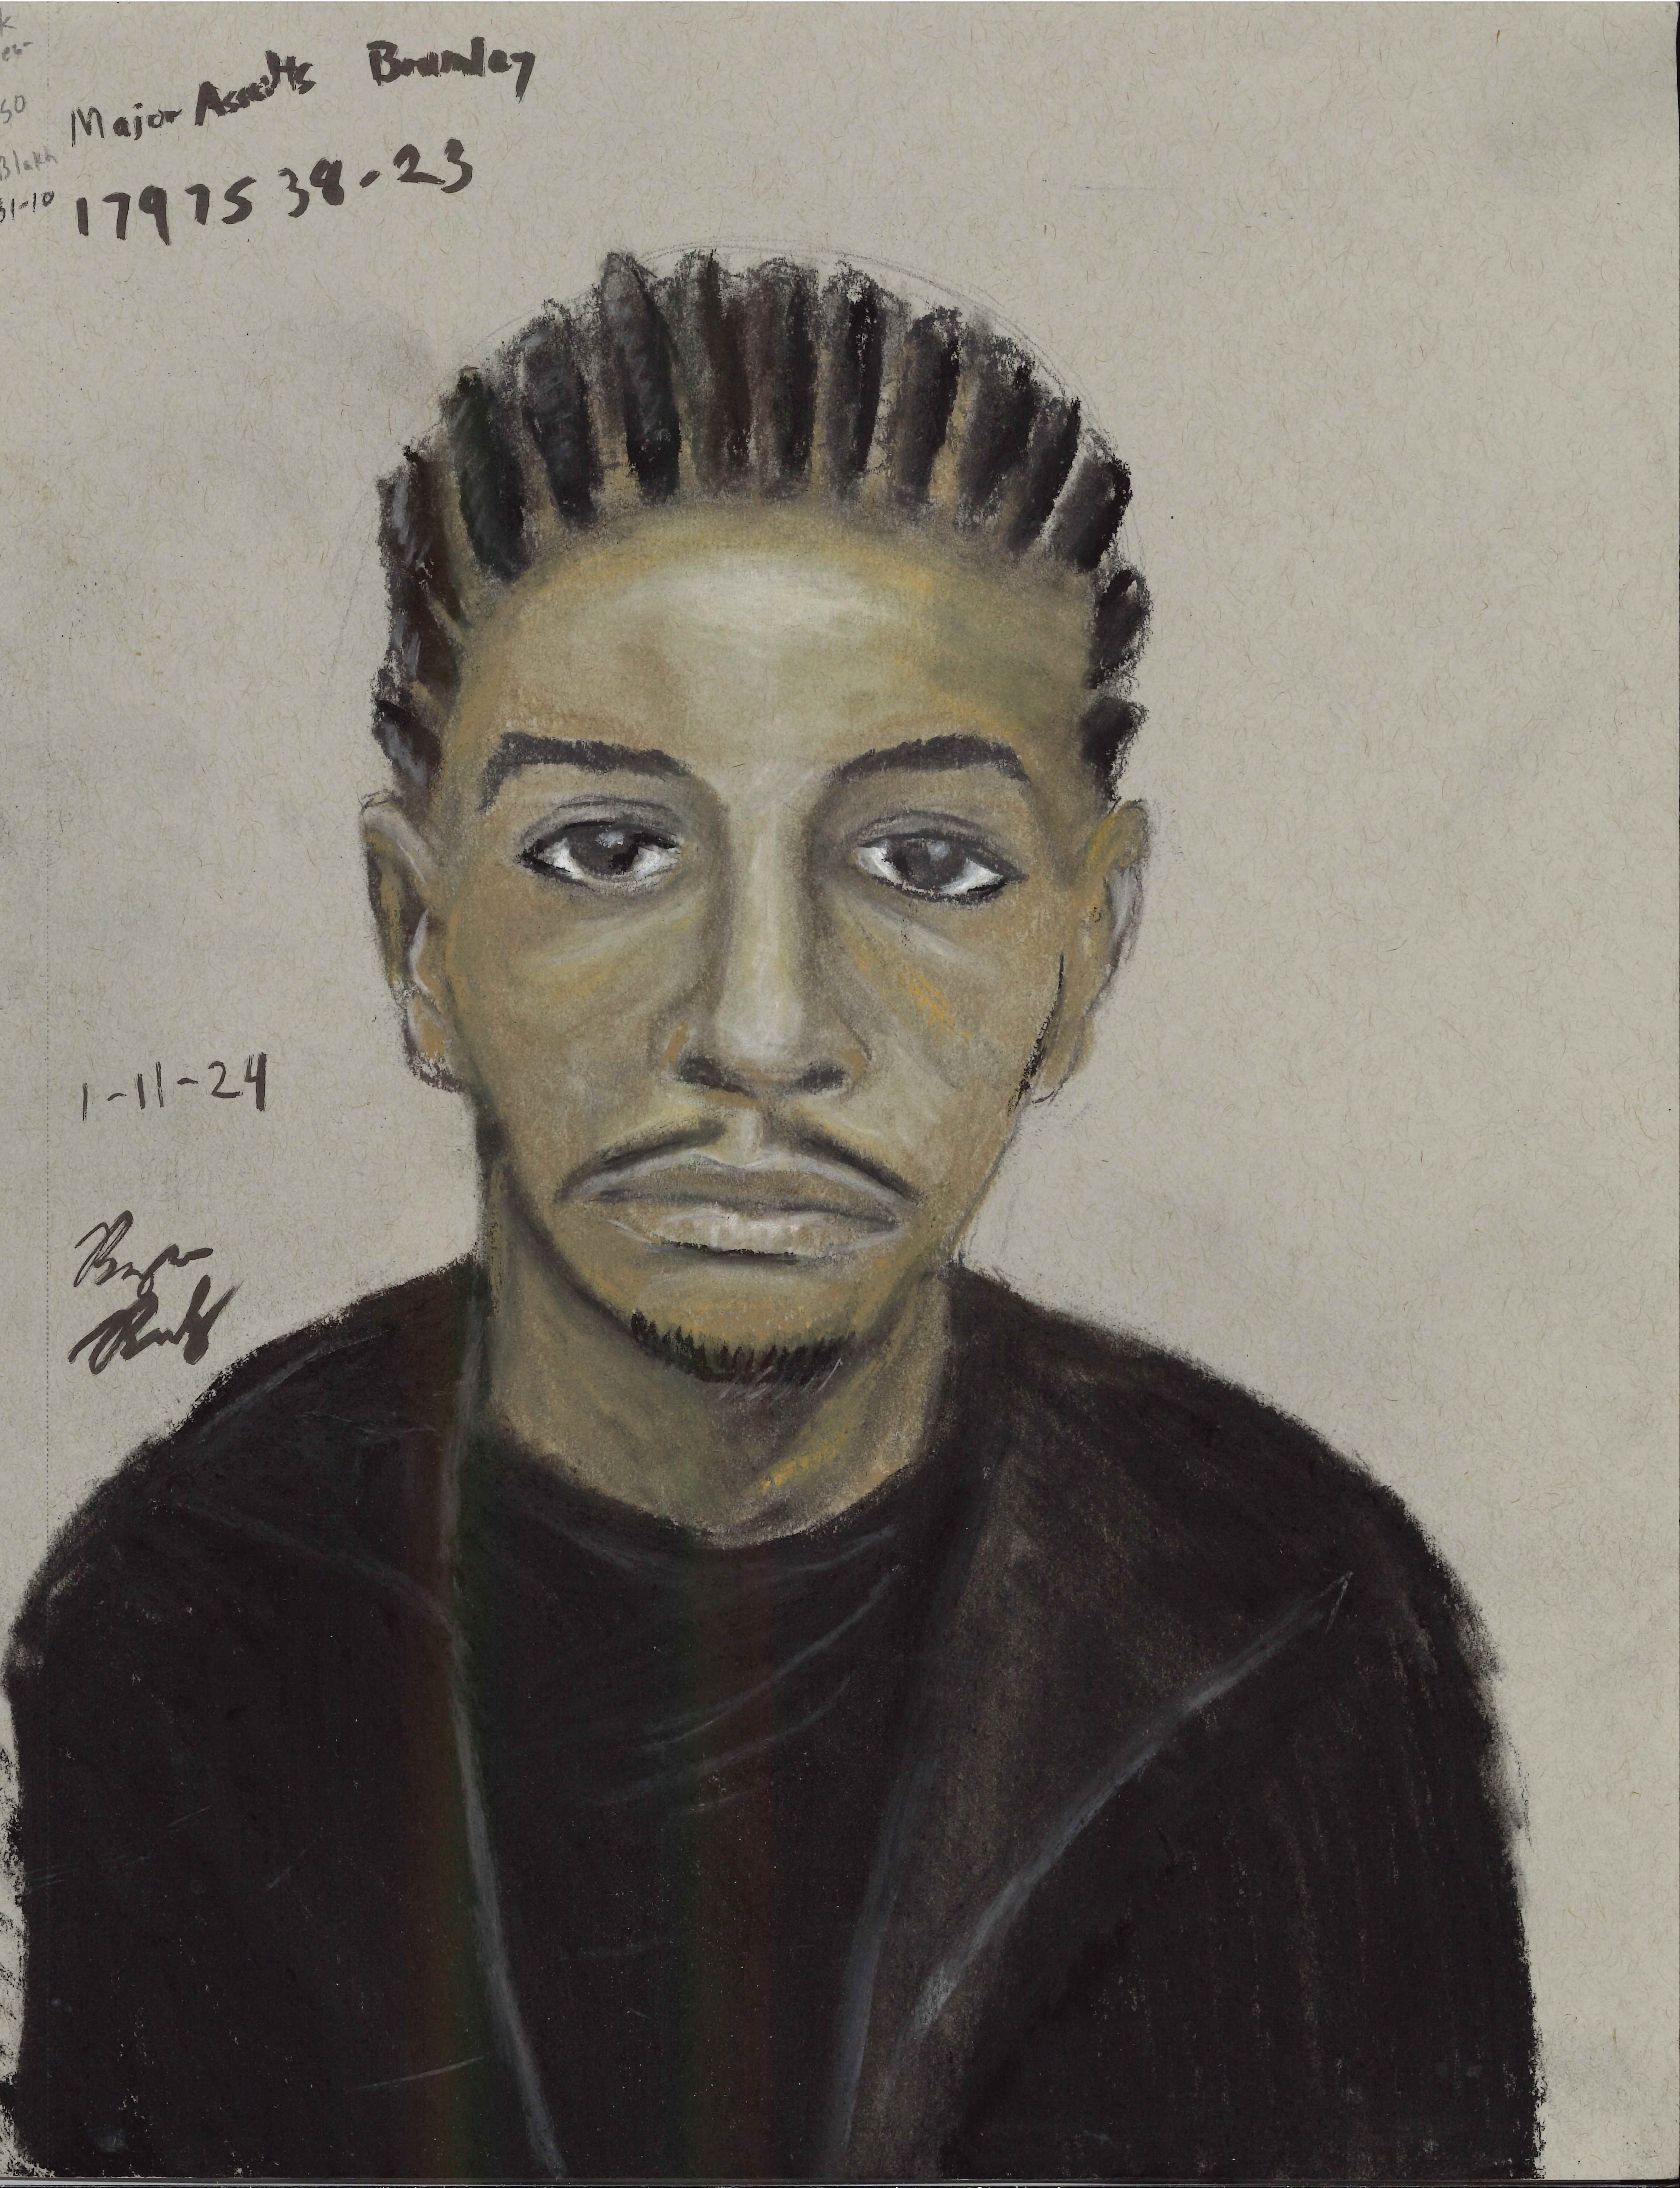 (Composite Sketch of Suspect)